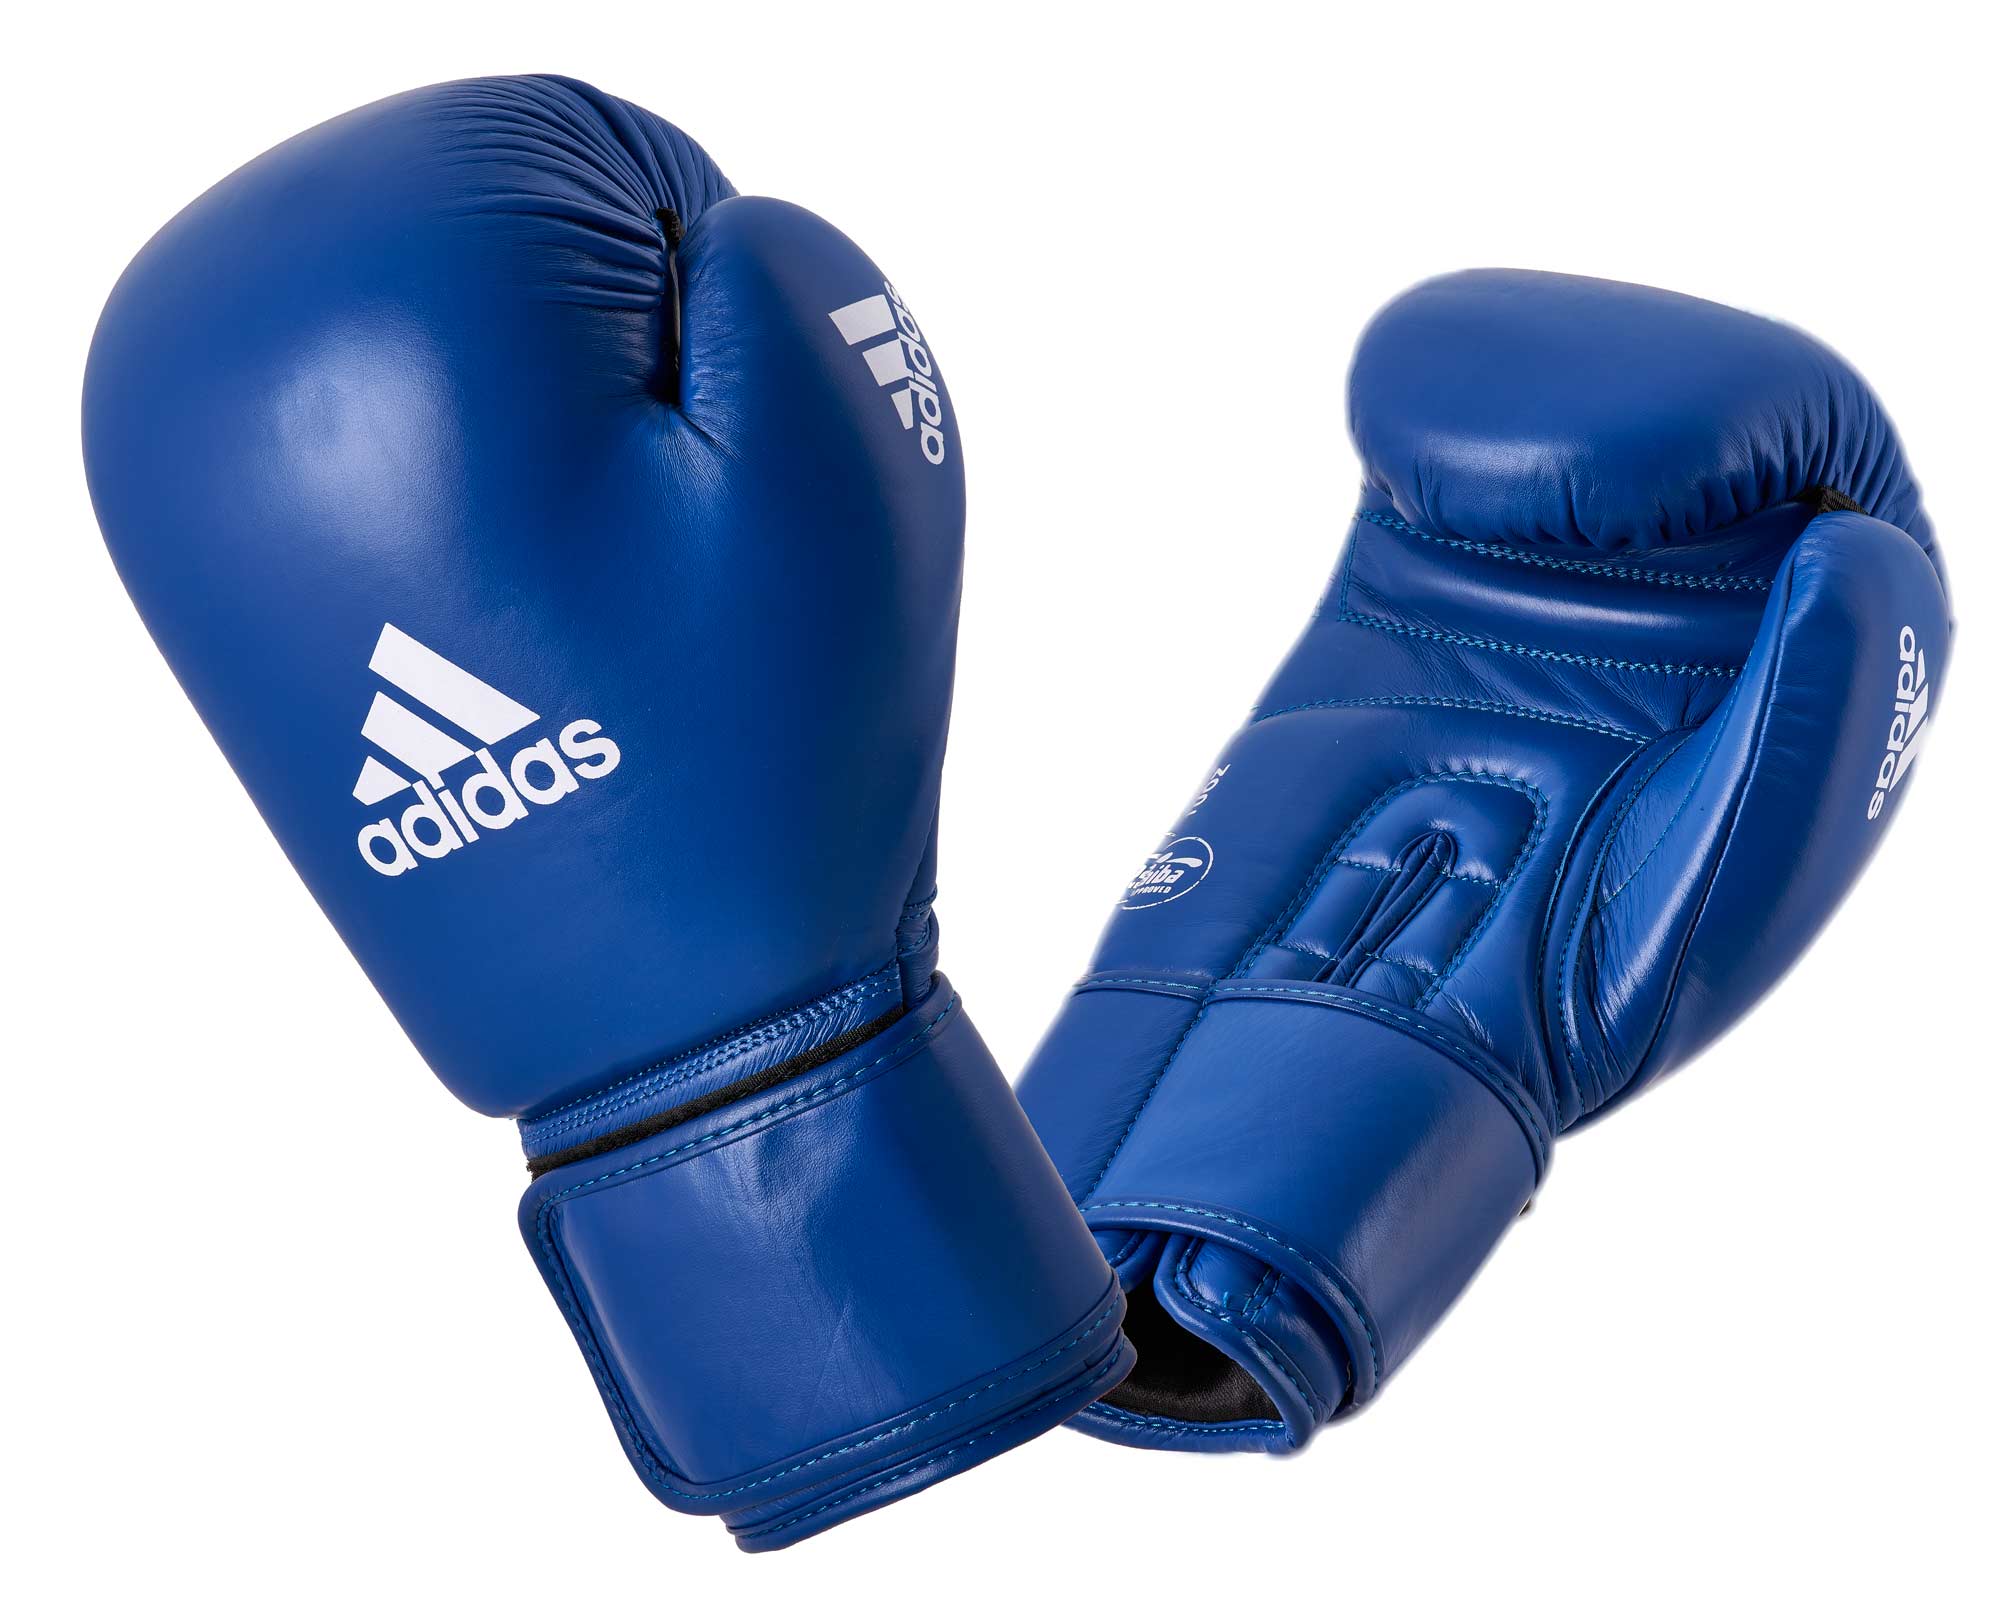 Adidas IBA Boxing Gloves